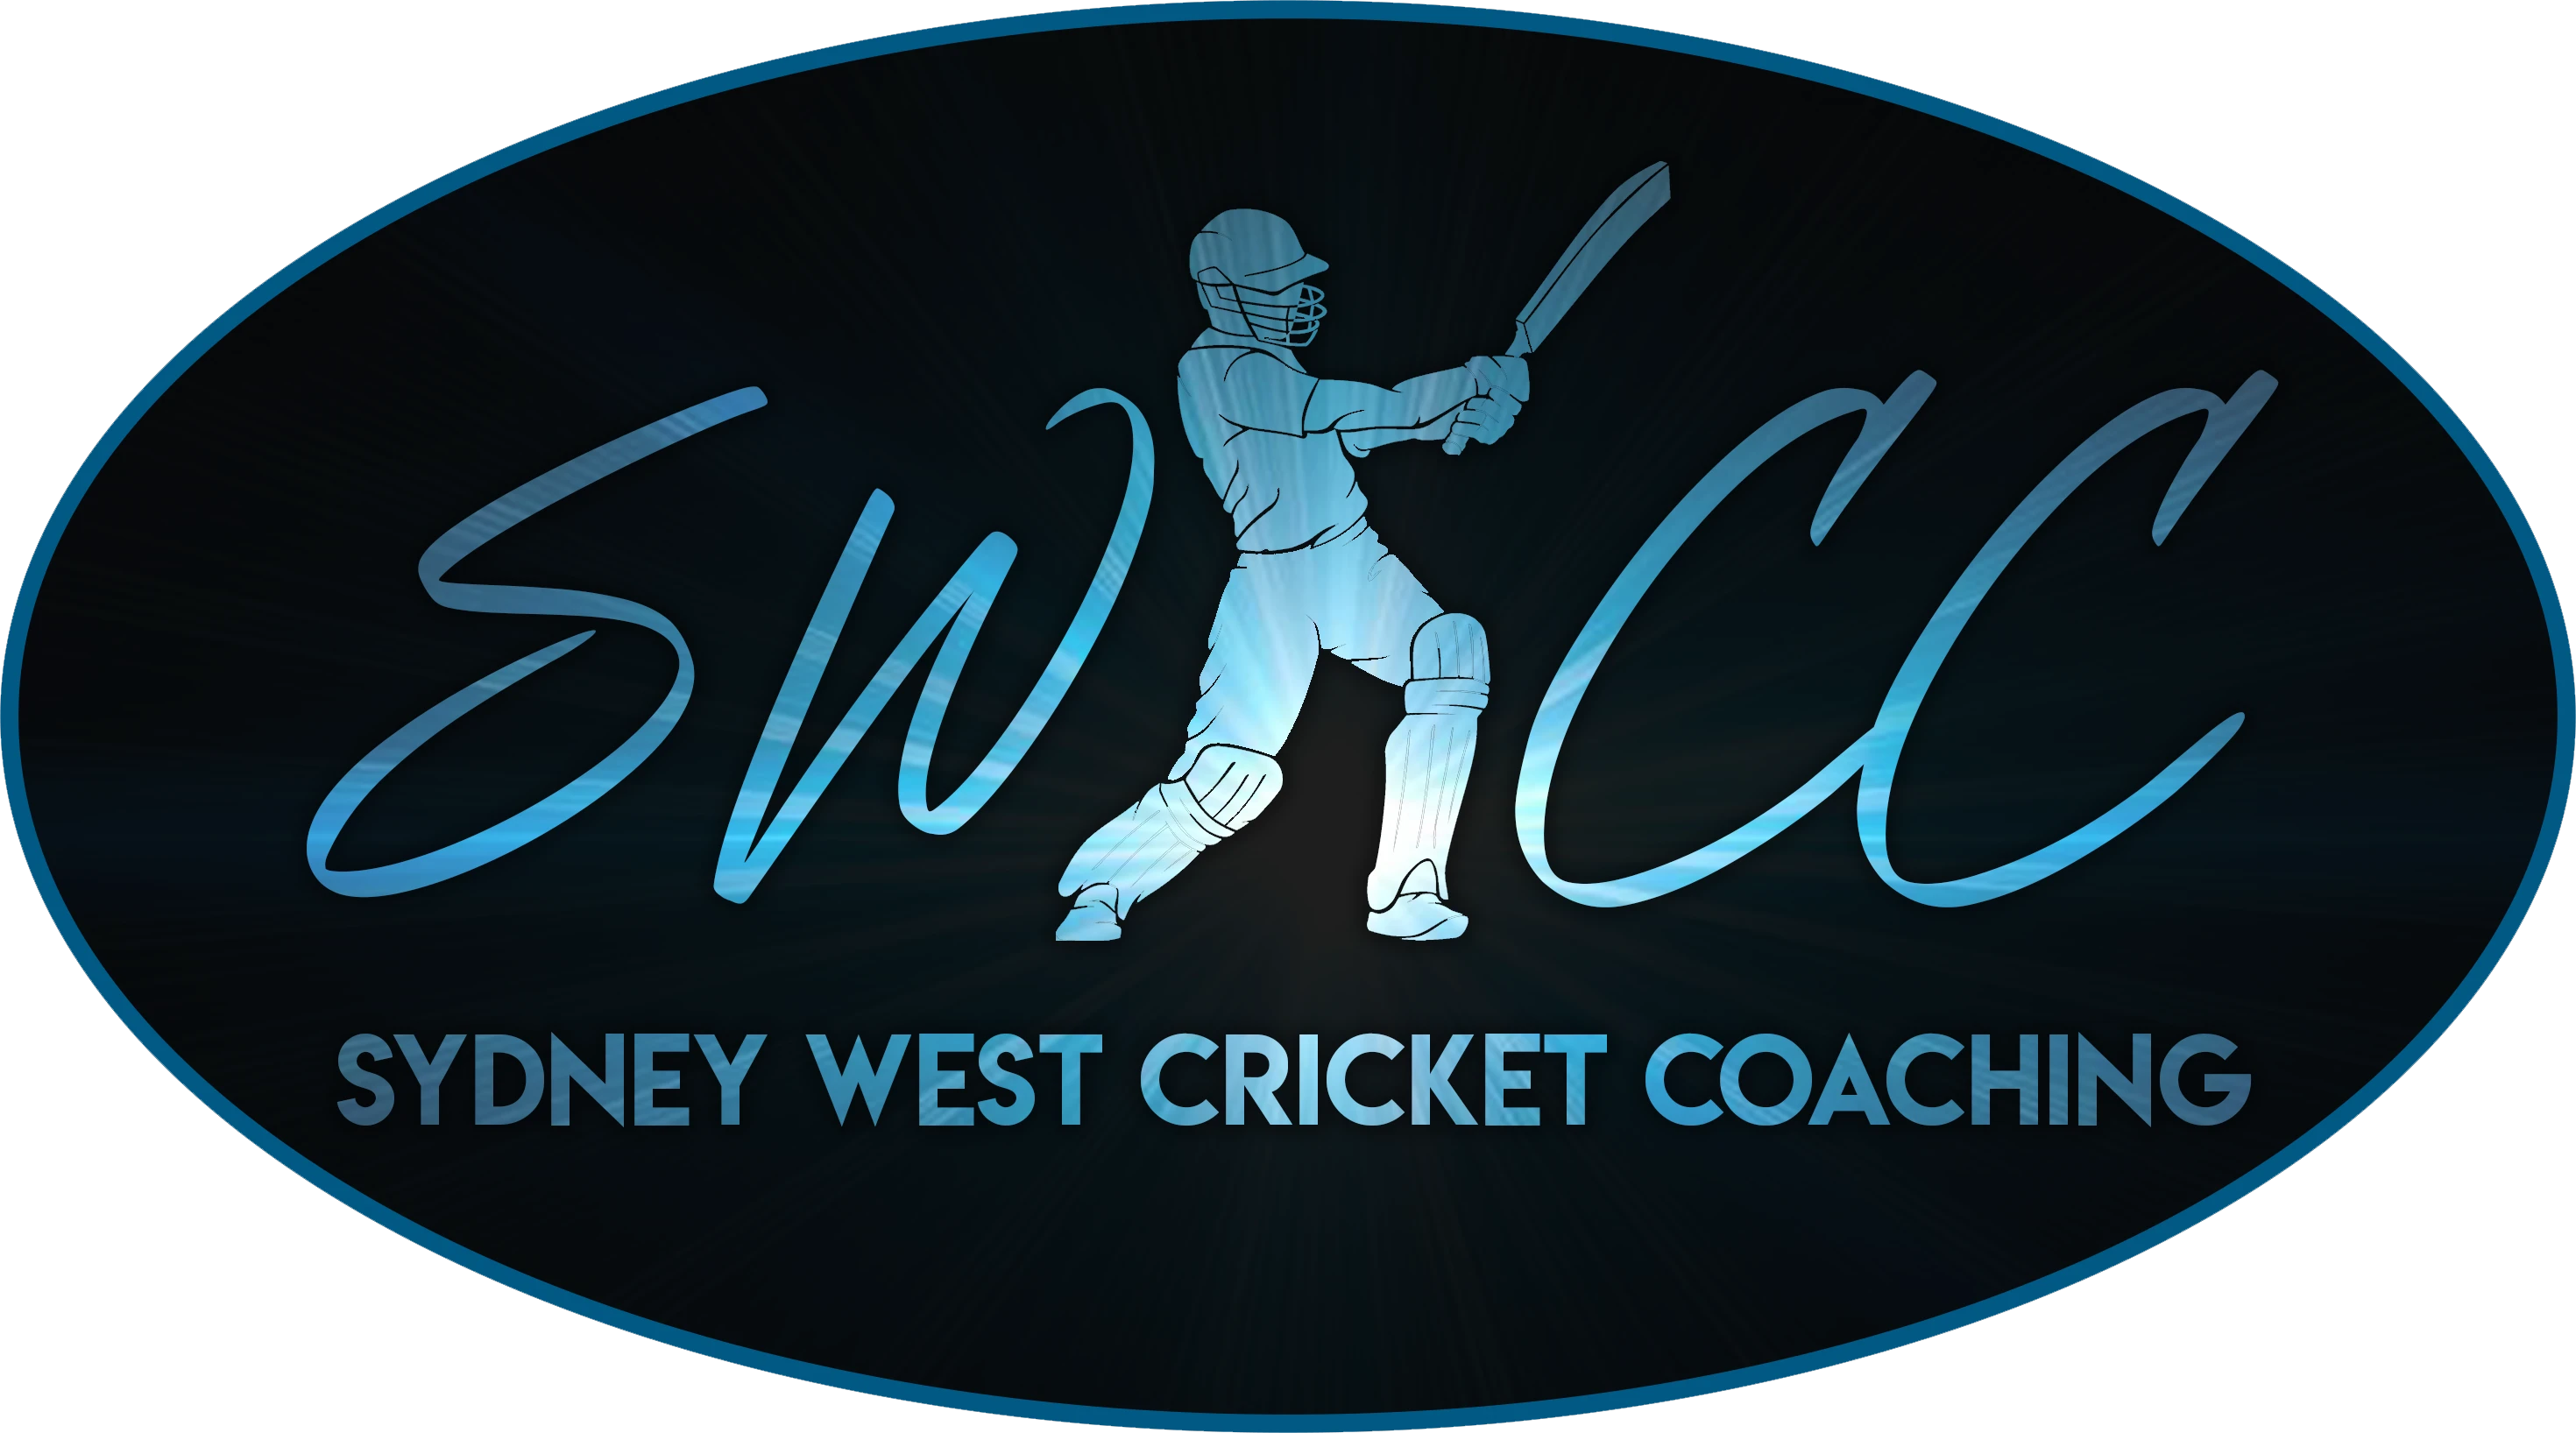 Sydney West Cricket Coaching